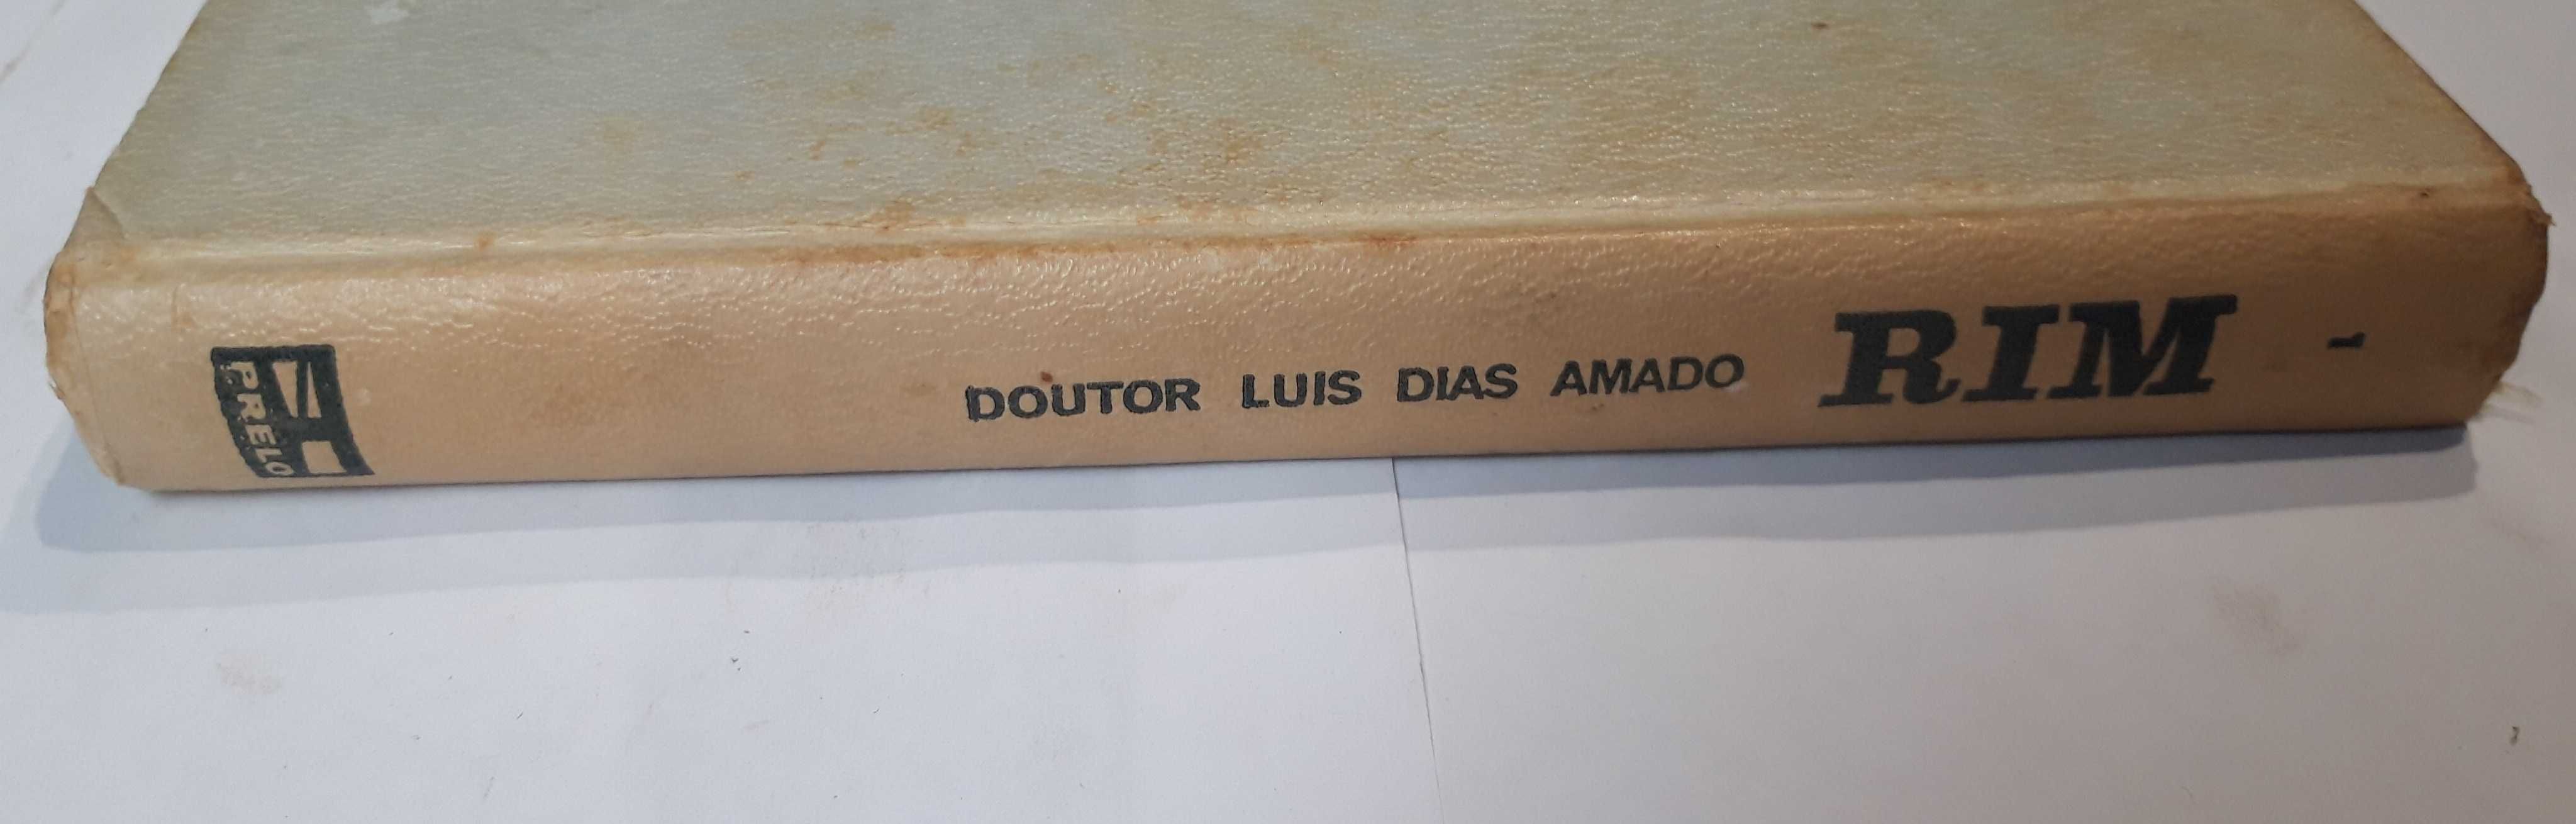 Livro- Ref CxC - Doutor Luís Dias Amado - Rim